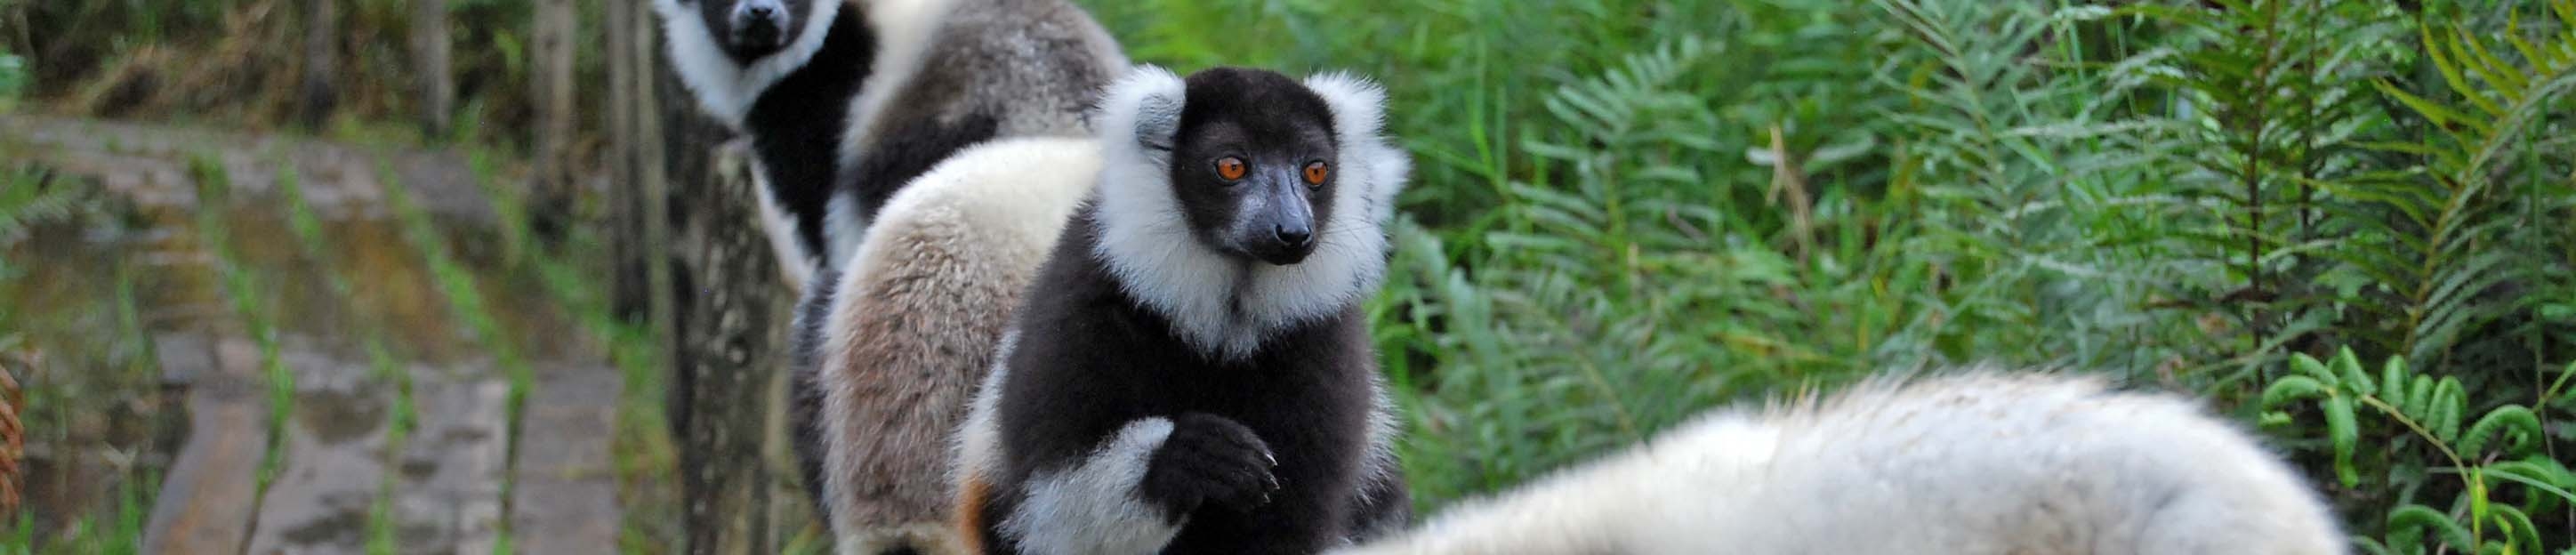 Black and white ruffled lemur | Andasibe, Madagascar